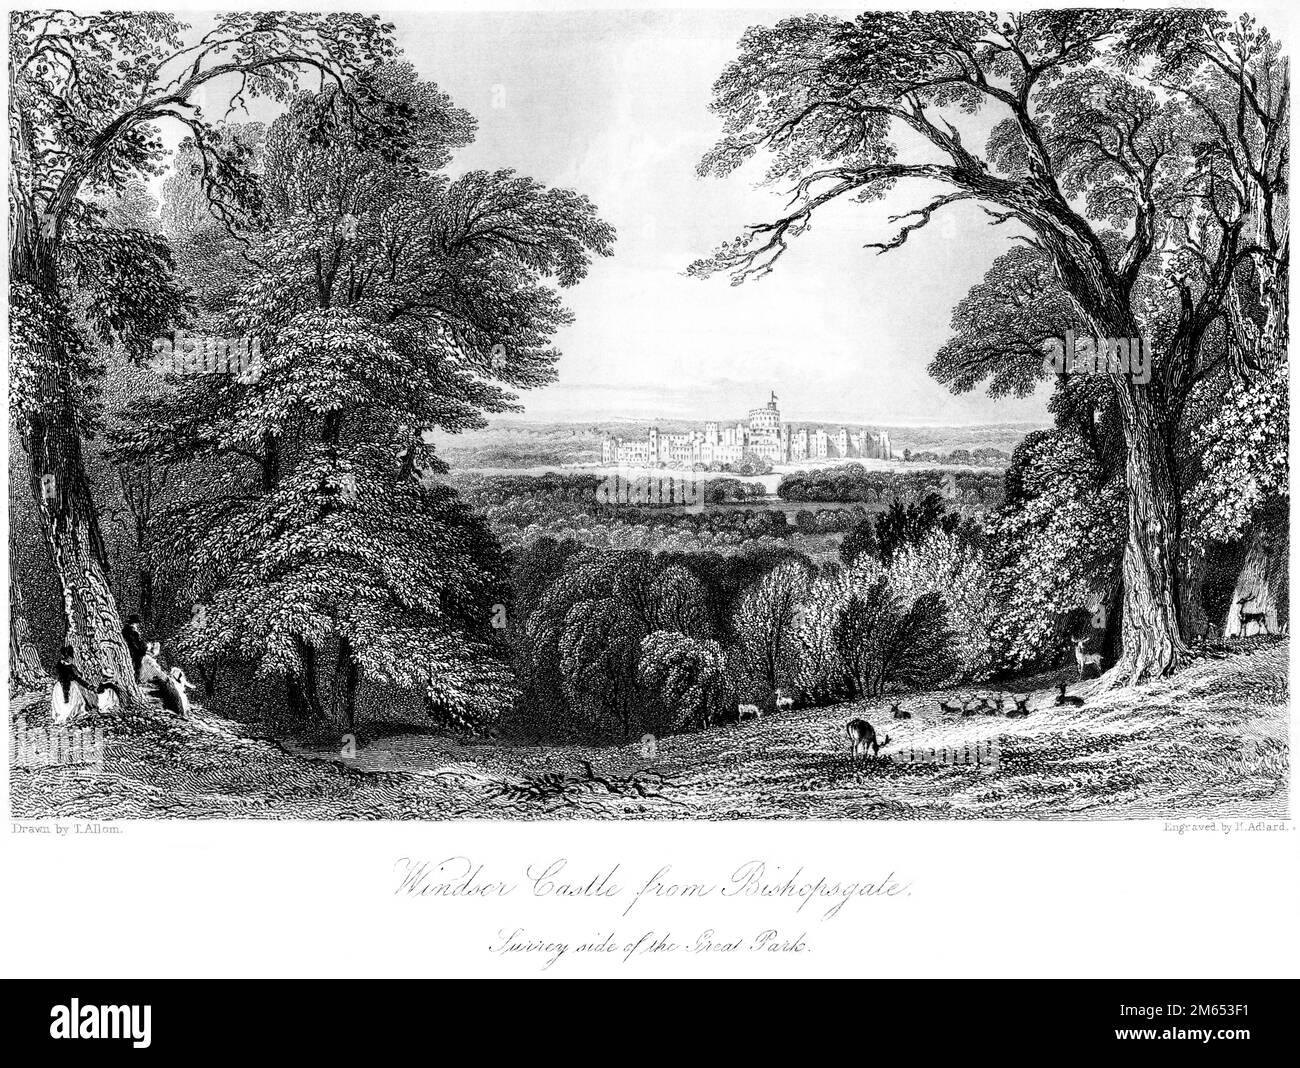 Eine Gravur von Windsor Castle aus Bishopsgate, Surrey Side of the Great Park, gescannt in hoher Auflösung aus einem 1850 gedruckten Buch. Stockfoto